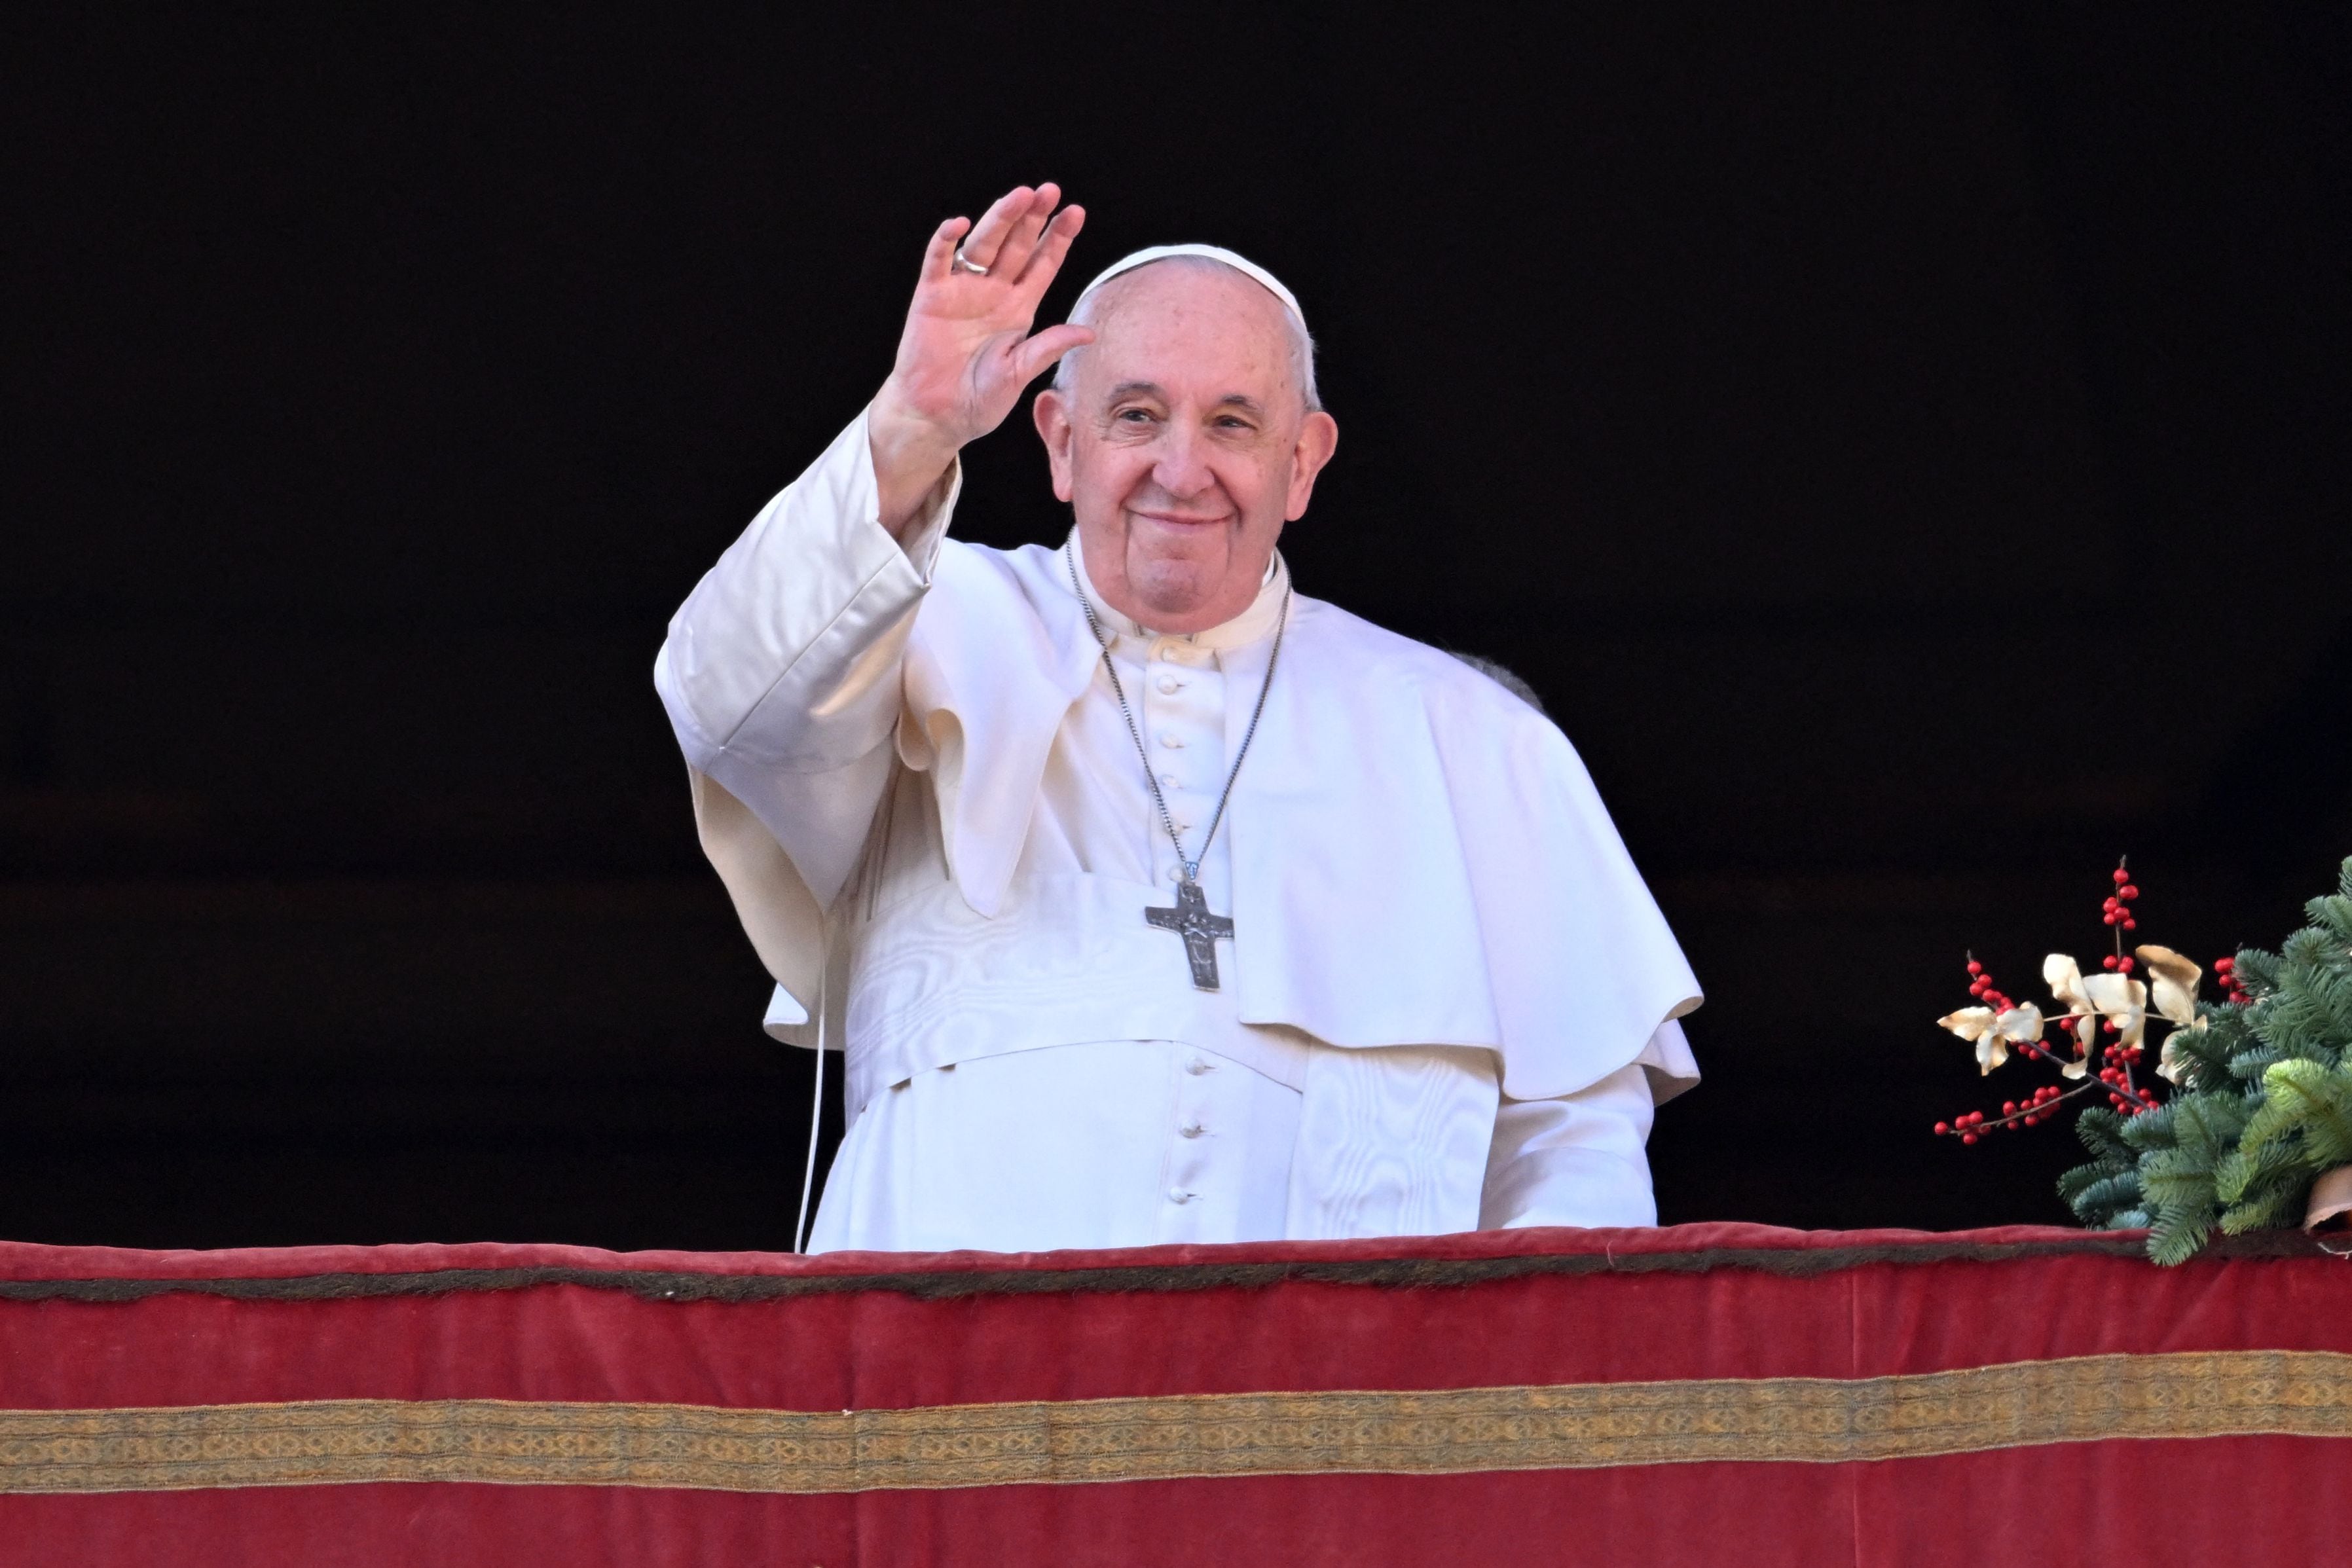 El Papa Francisco y El Vaticano aprueban dar bendiciones a uniones de parejas del mismo sexo